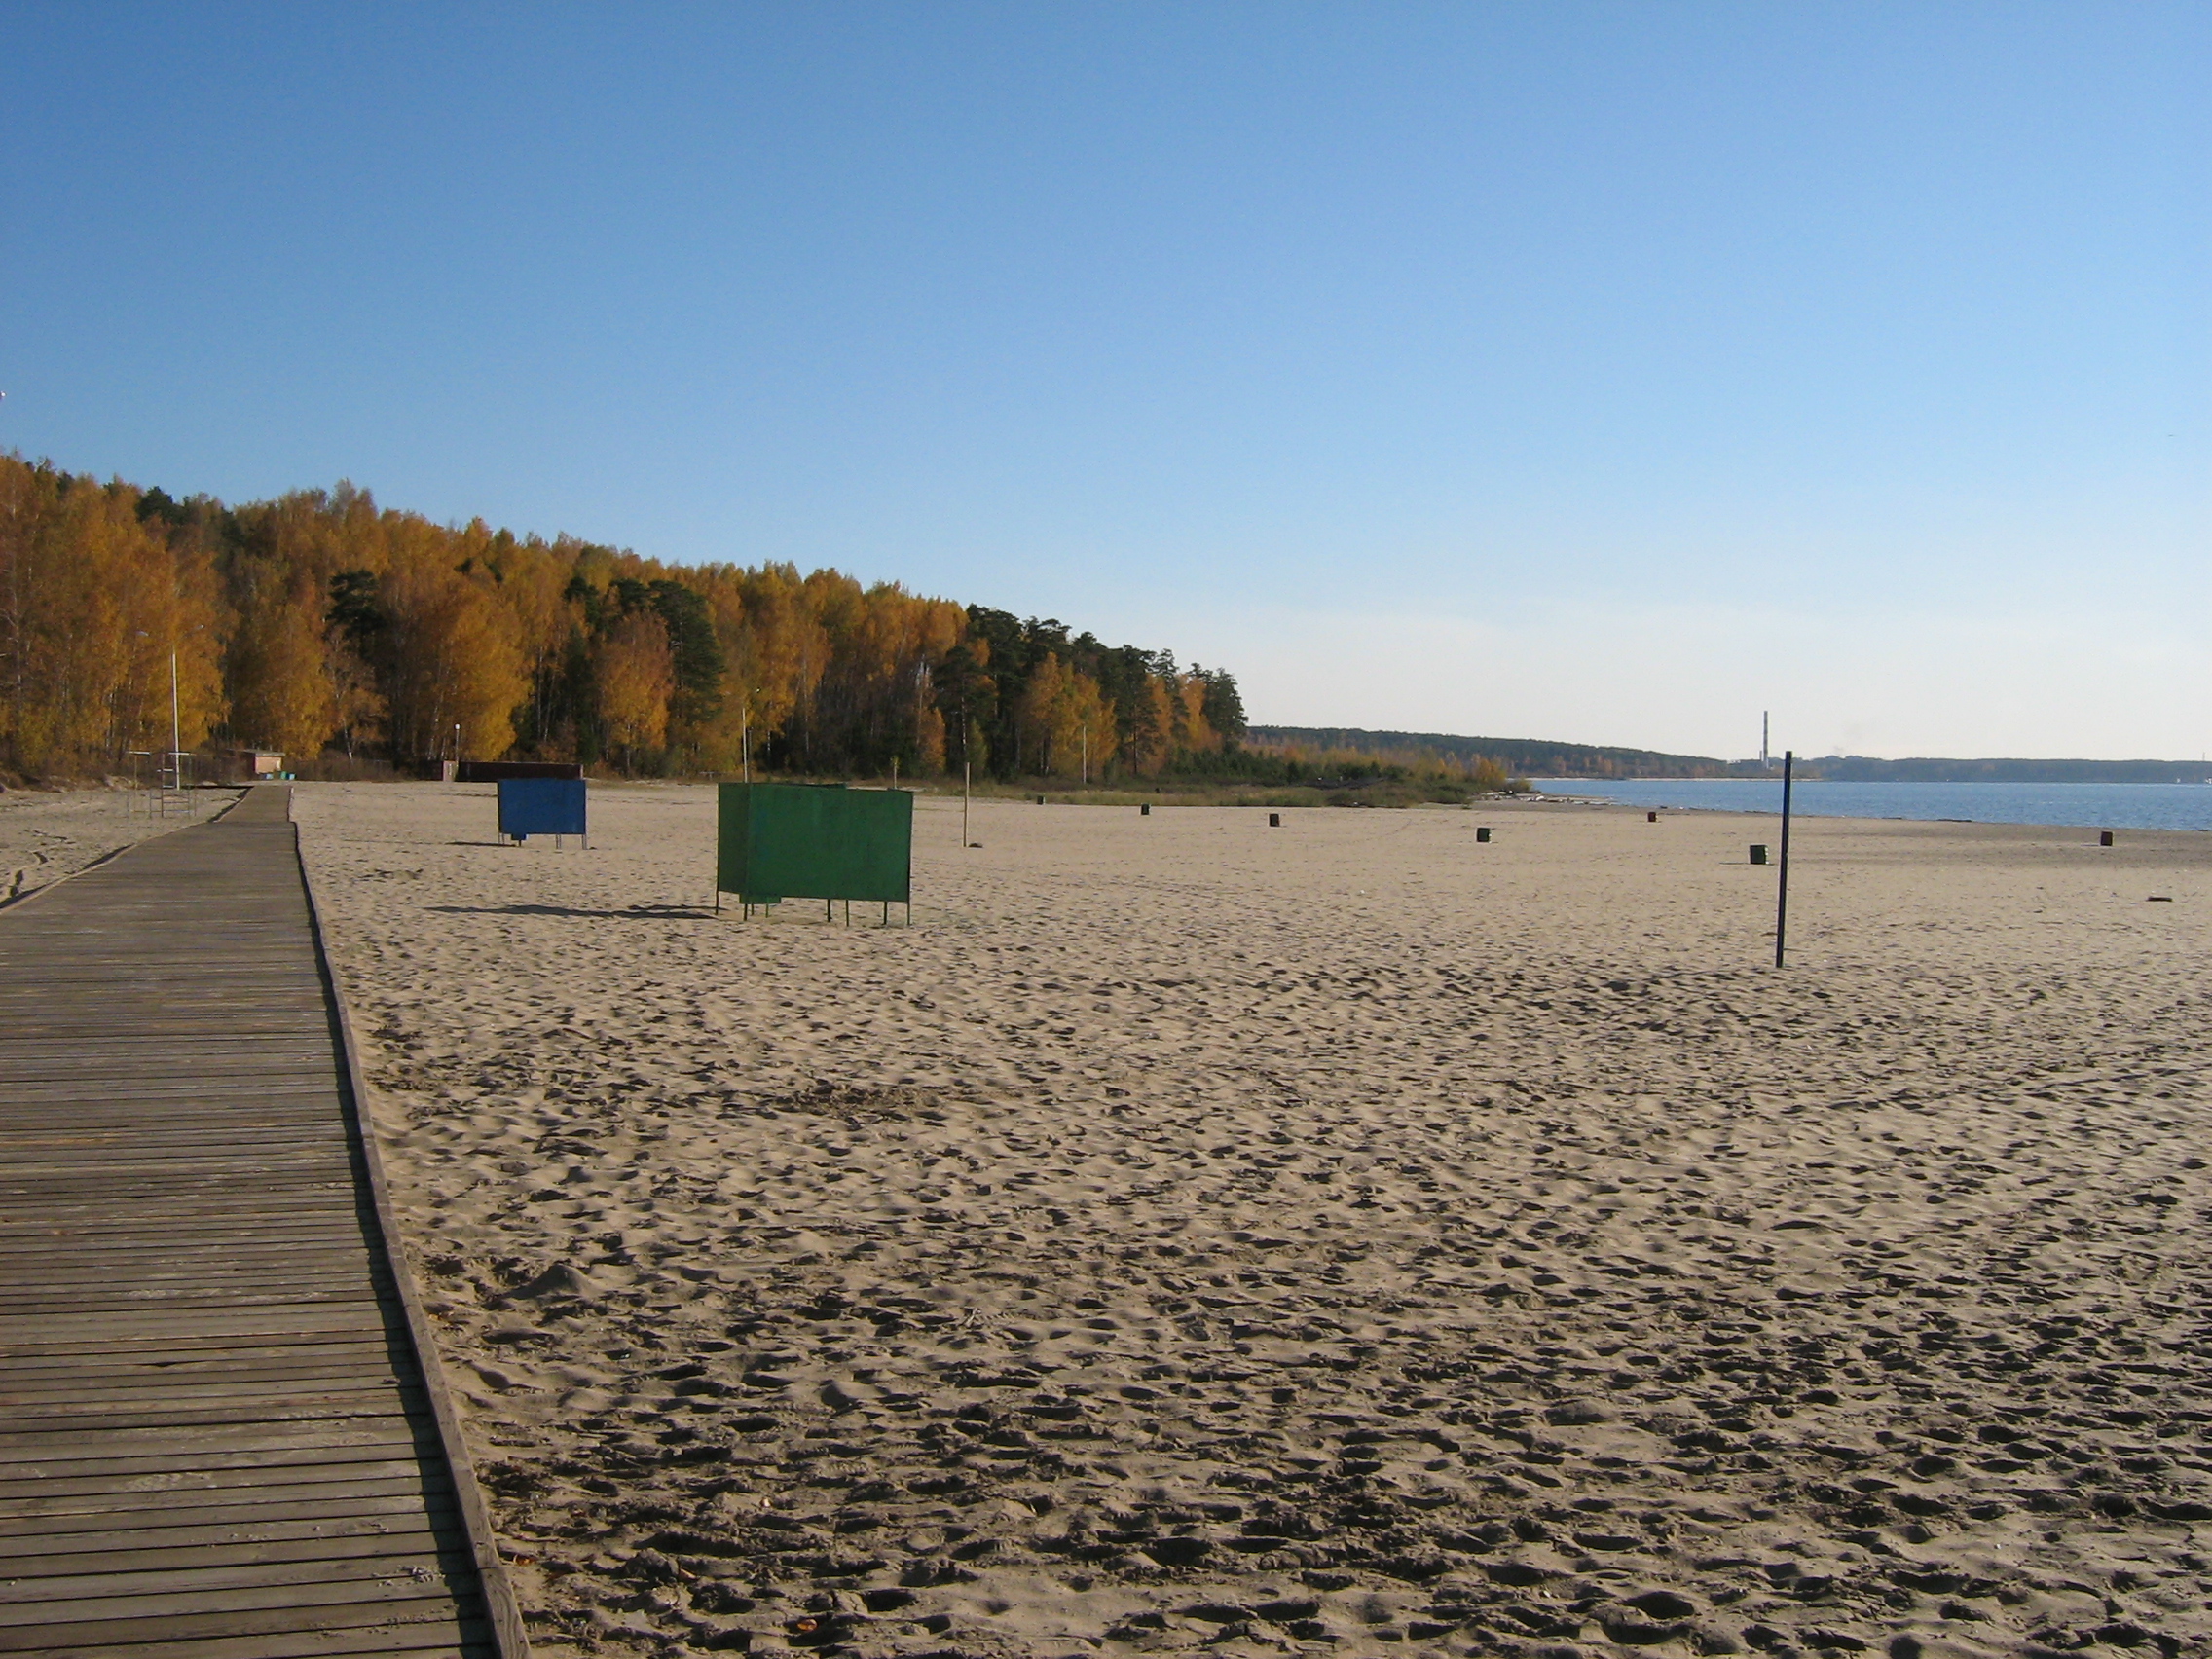 Autumn in Akademgorodok. On the beach